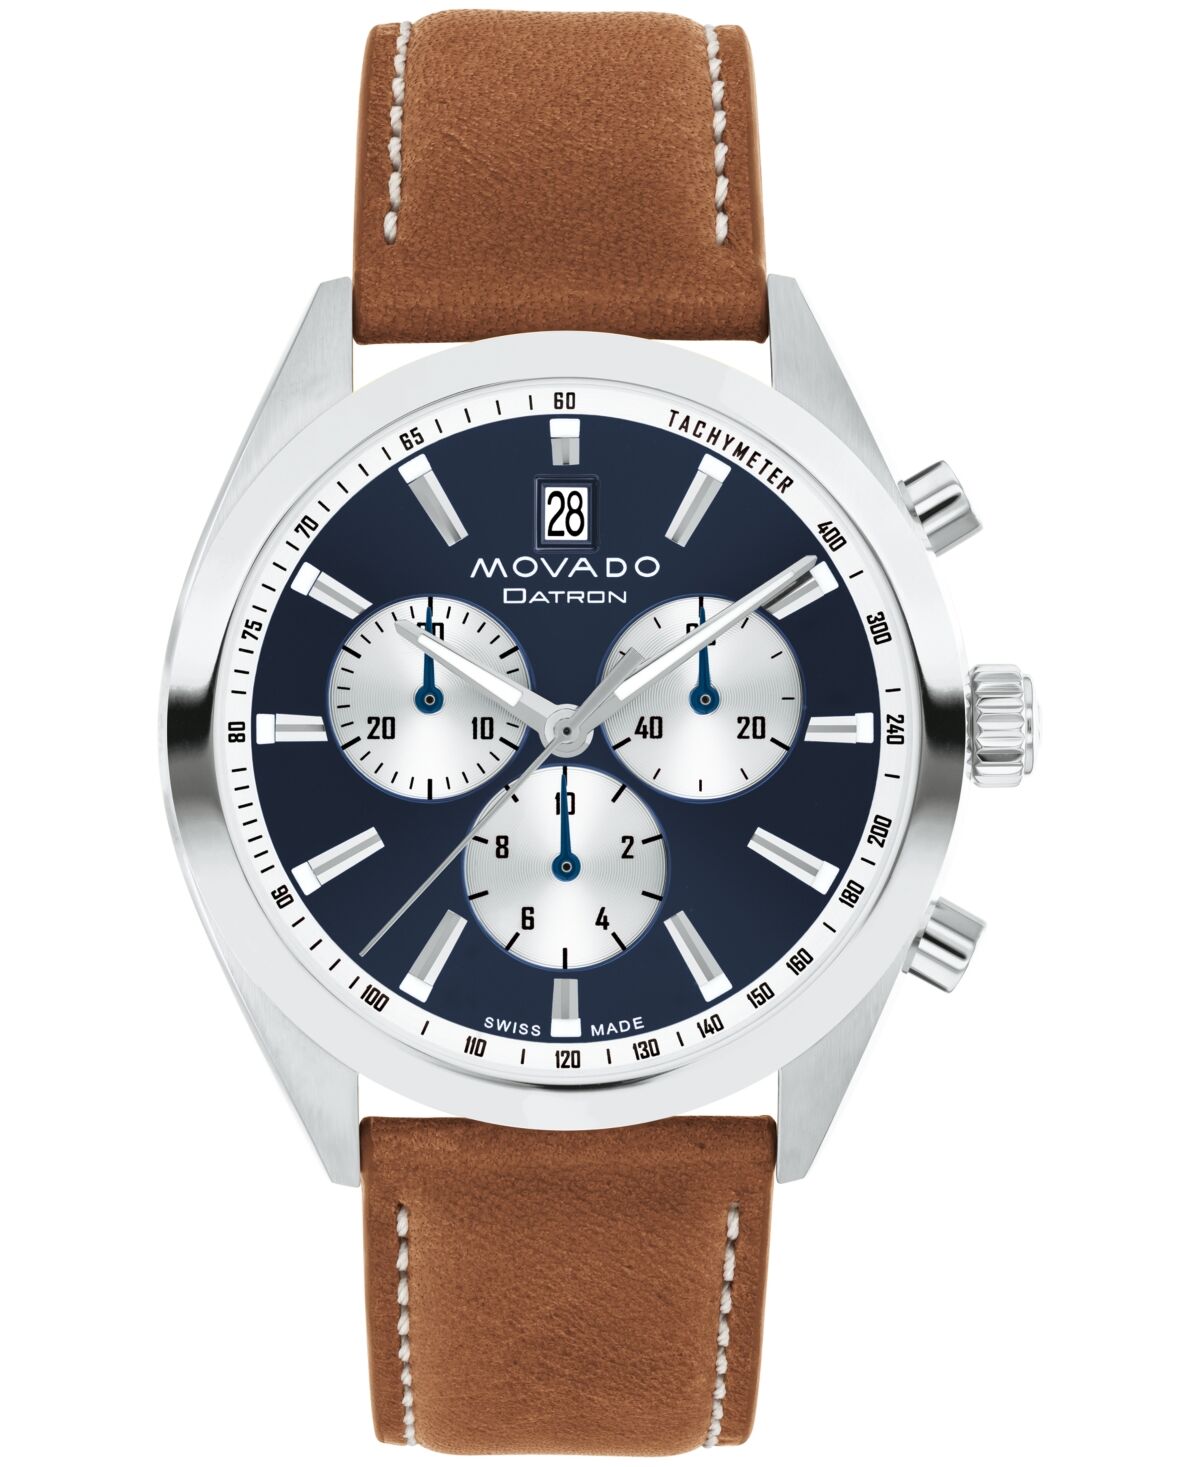 Movado Men's Datron Swiss Quartz Chrono Cognac Leather Watch 40mm - Cognac